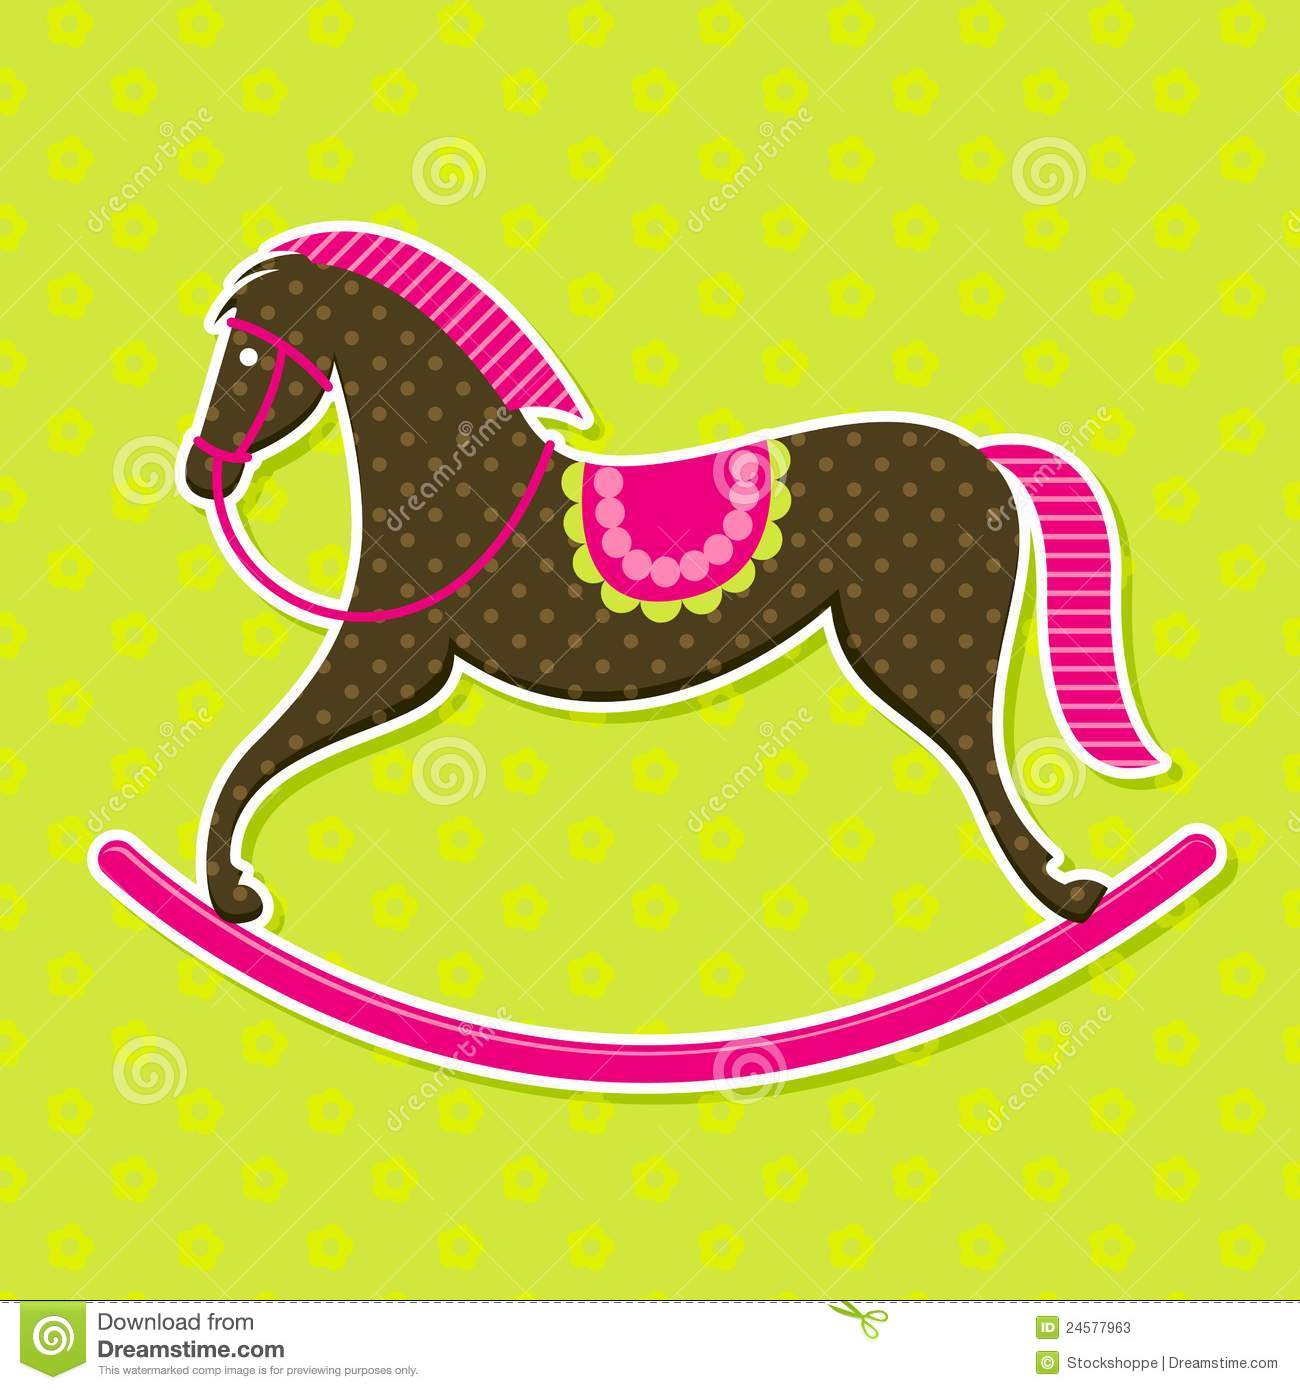 Vector Rocking Horse Baby Card Stock Photos   Image  24577963